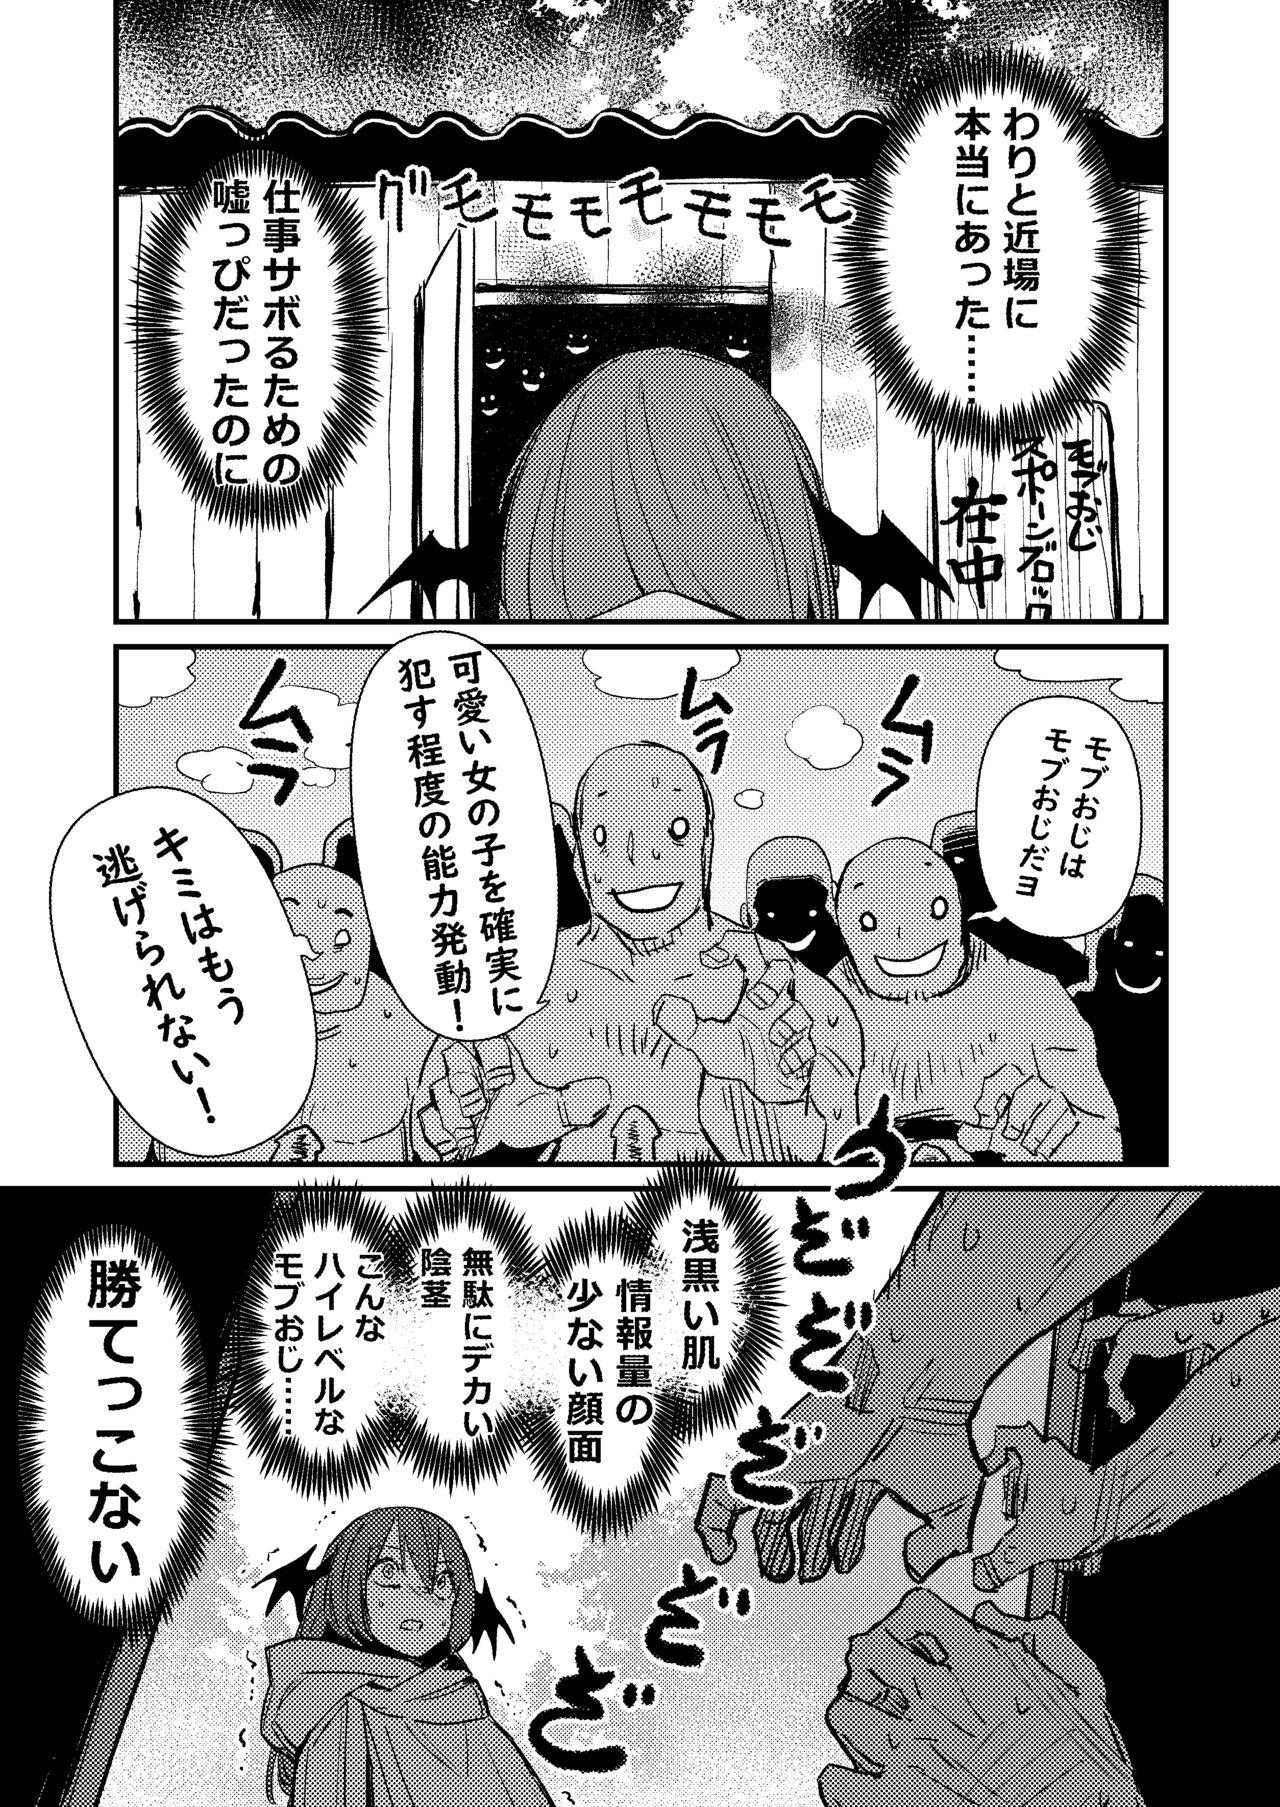 Tanned Koakuma/18+/Manga/8p - Touhou project Brother Sister - Page 3